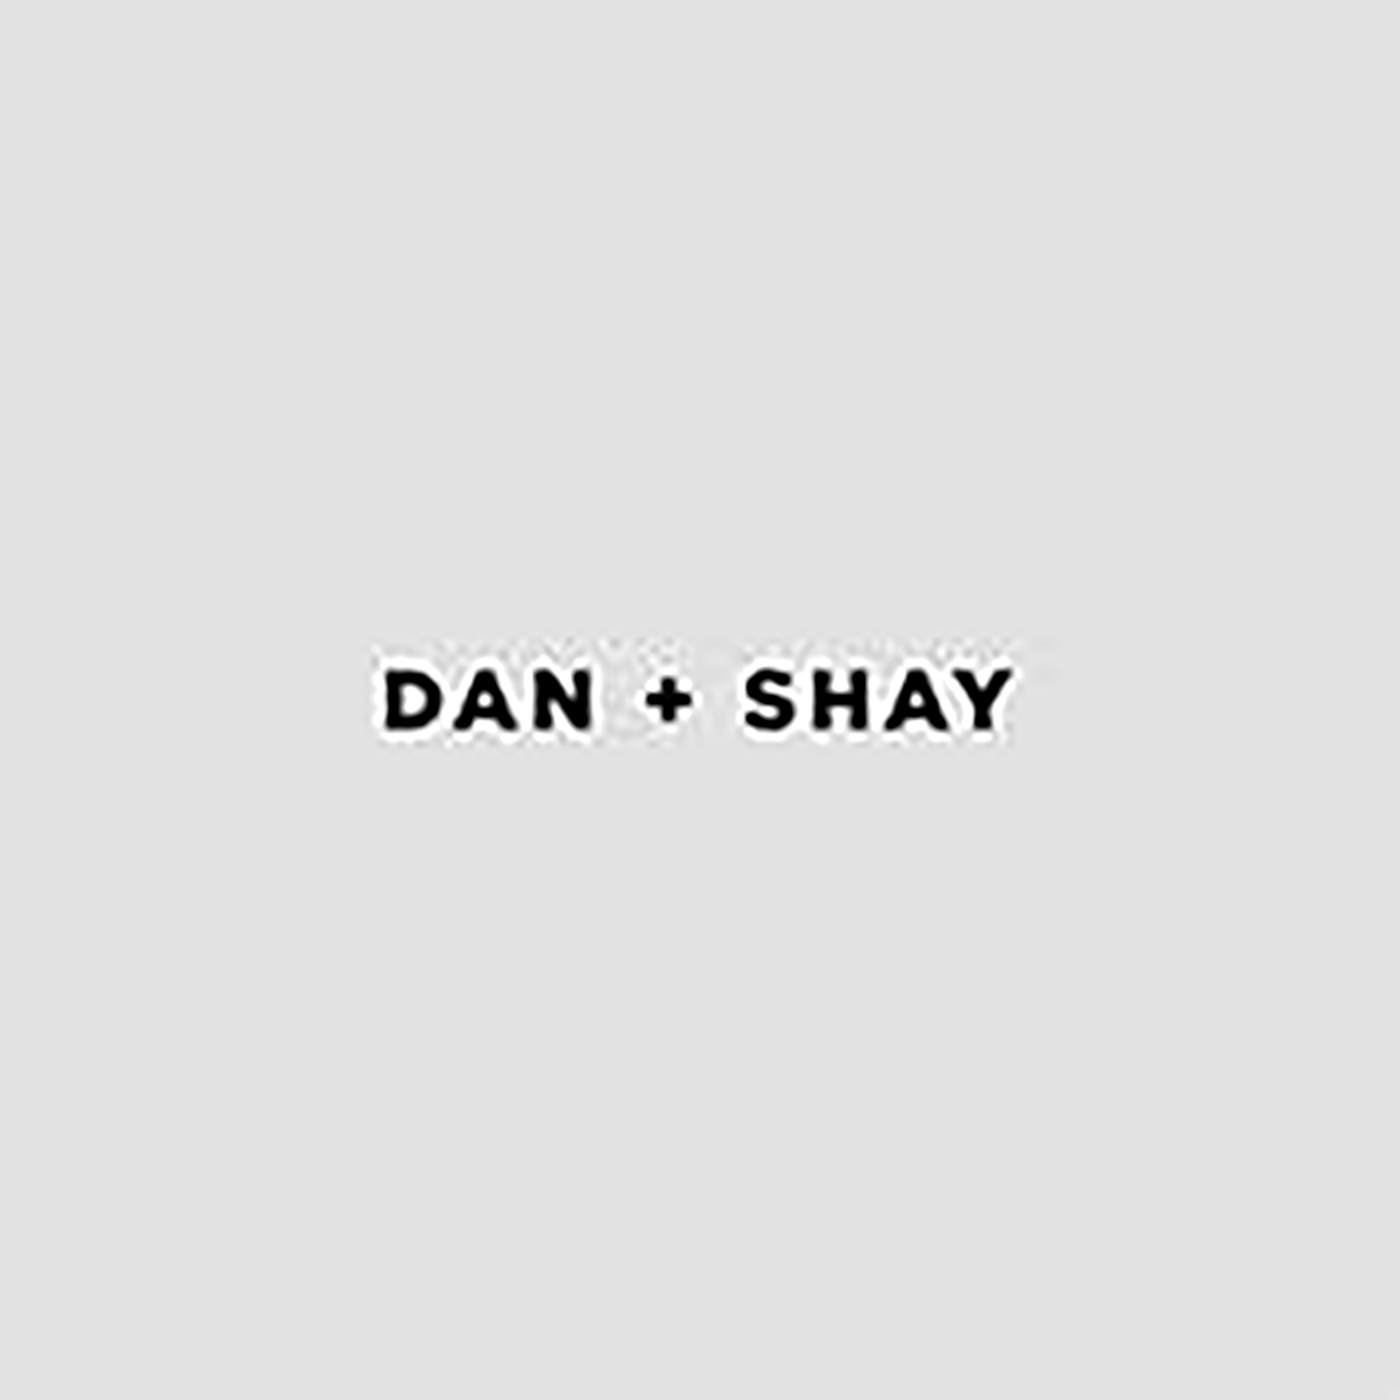 Dan + Shay Vinyl Record